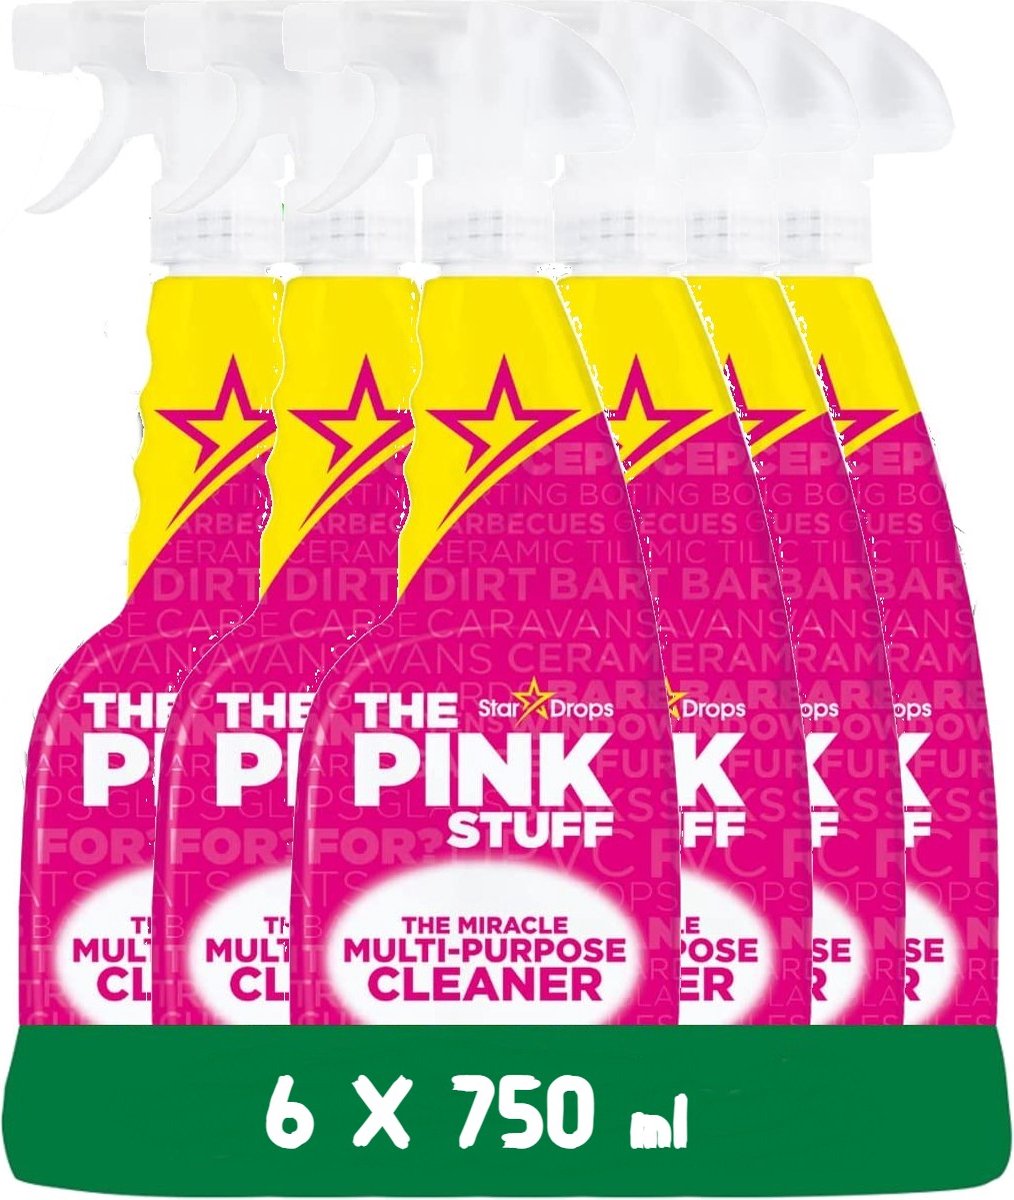 The Pink Stuff Spray Limpiador Multiusos - Envase económico de 6 x 750 ml - Respetuoso con el medio ambiente